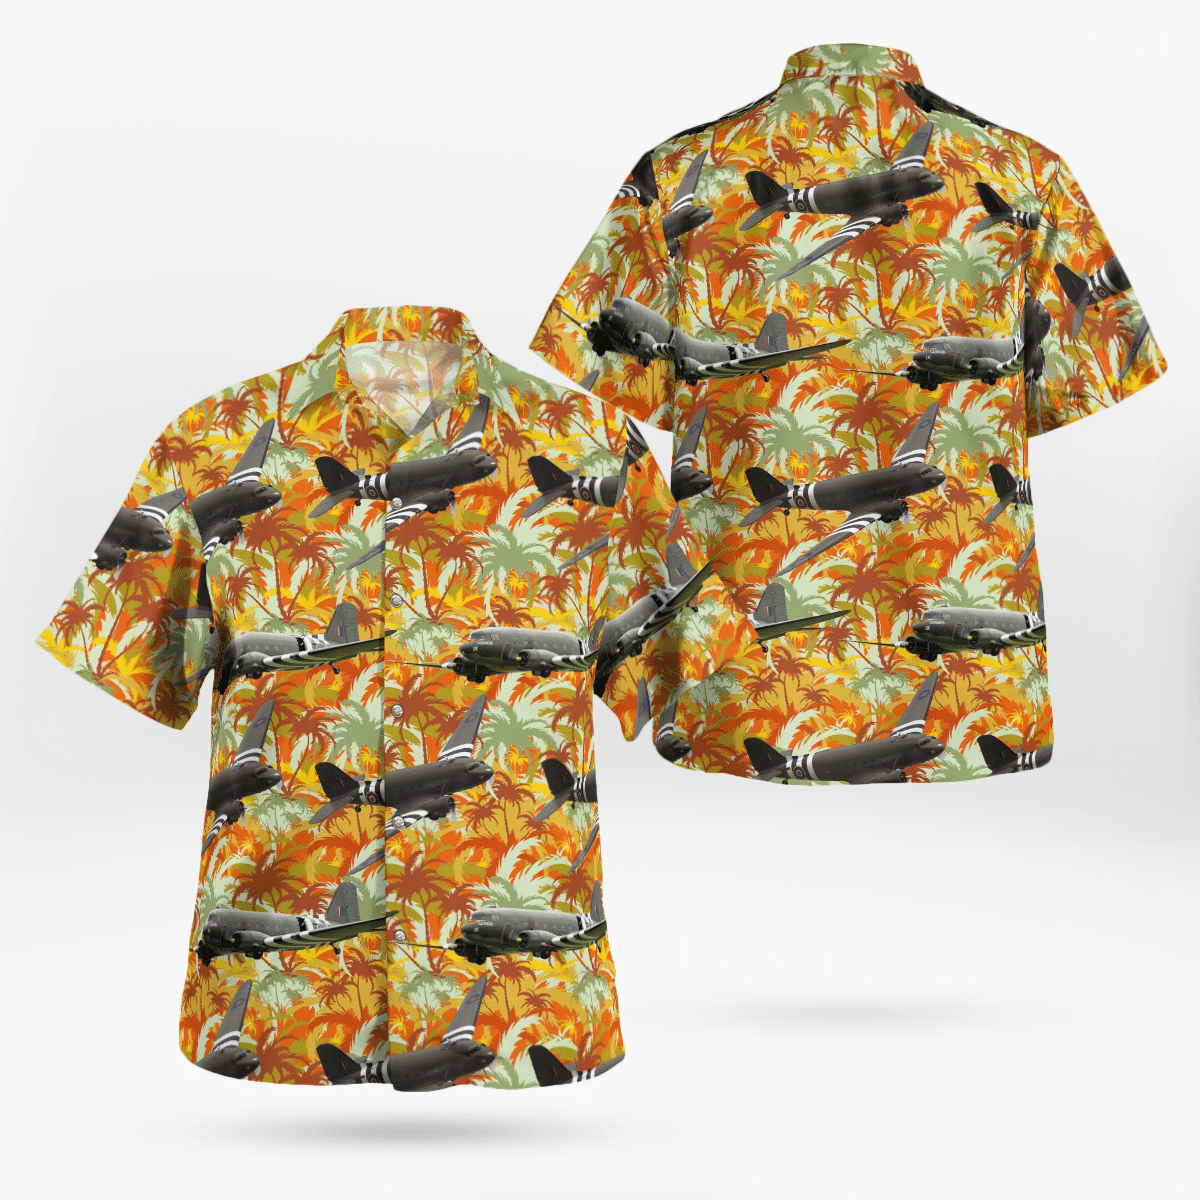 Best Hawaiian shirts 2022 305